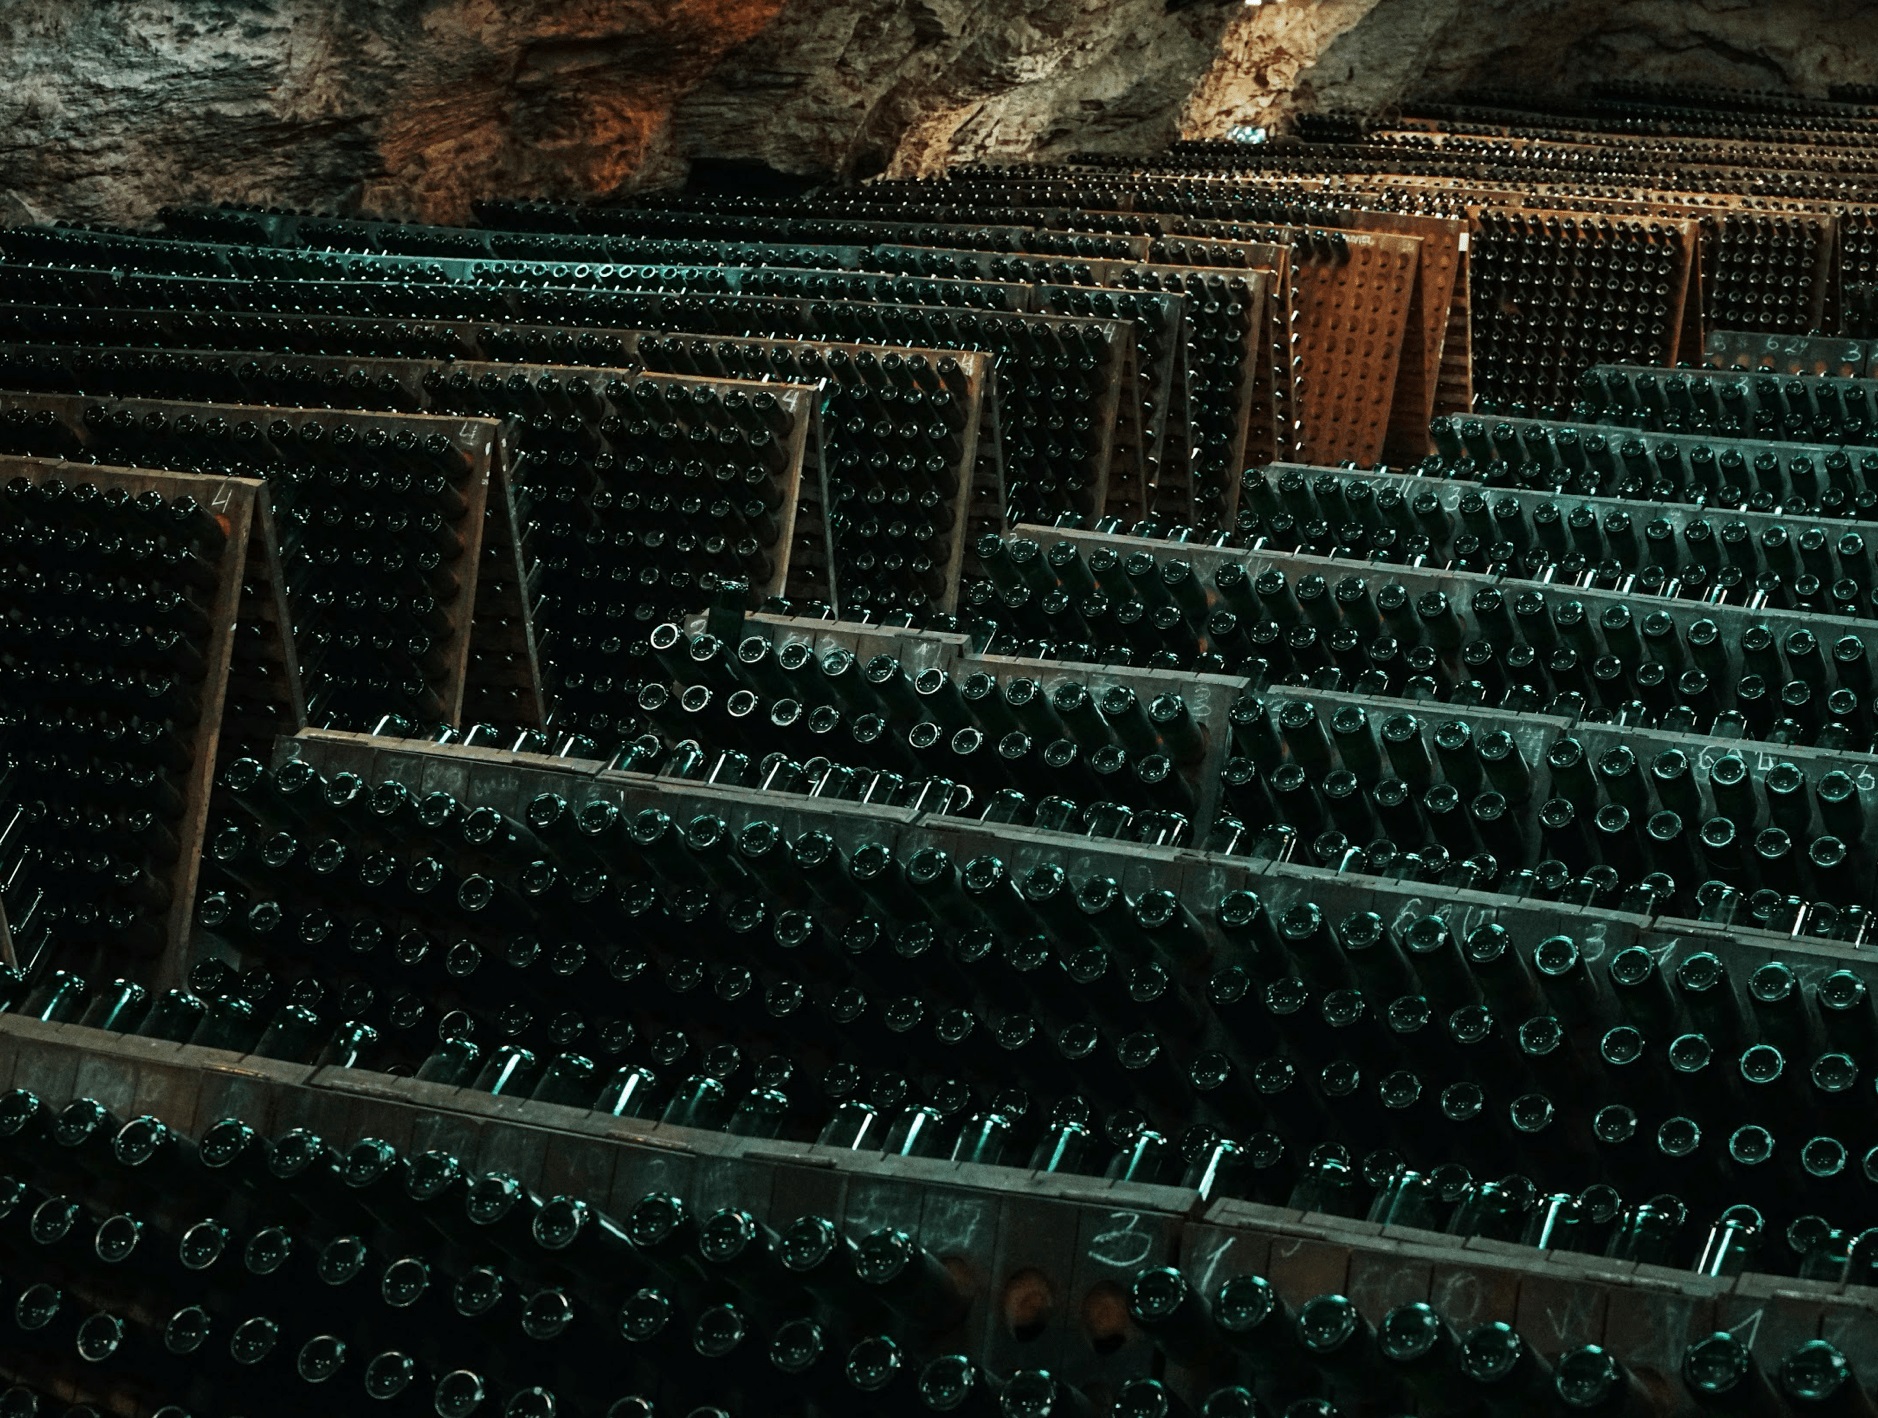 Ukrainian Sparkling Wine Bottles Underground for Storage